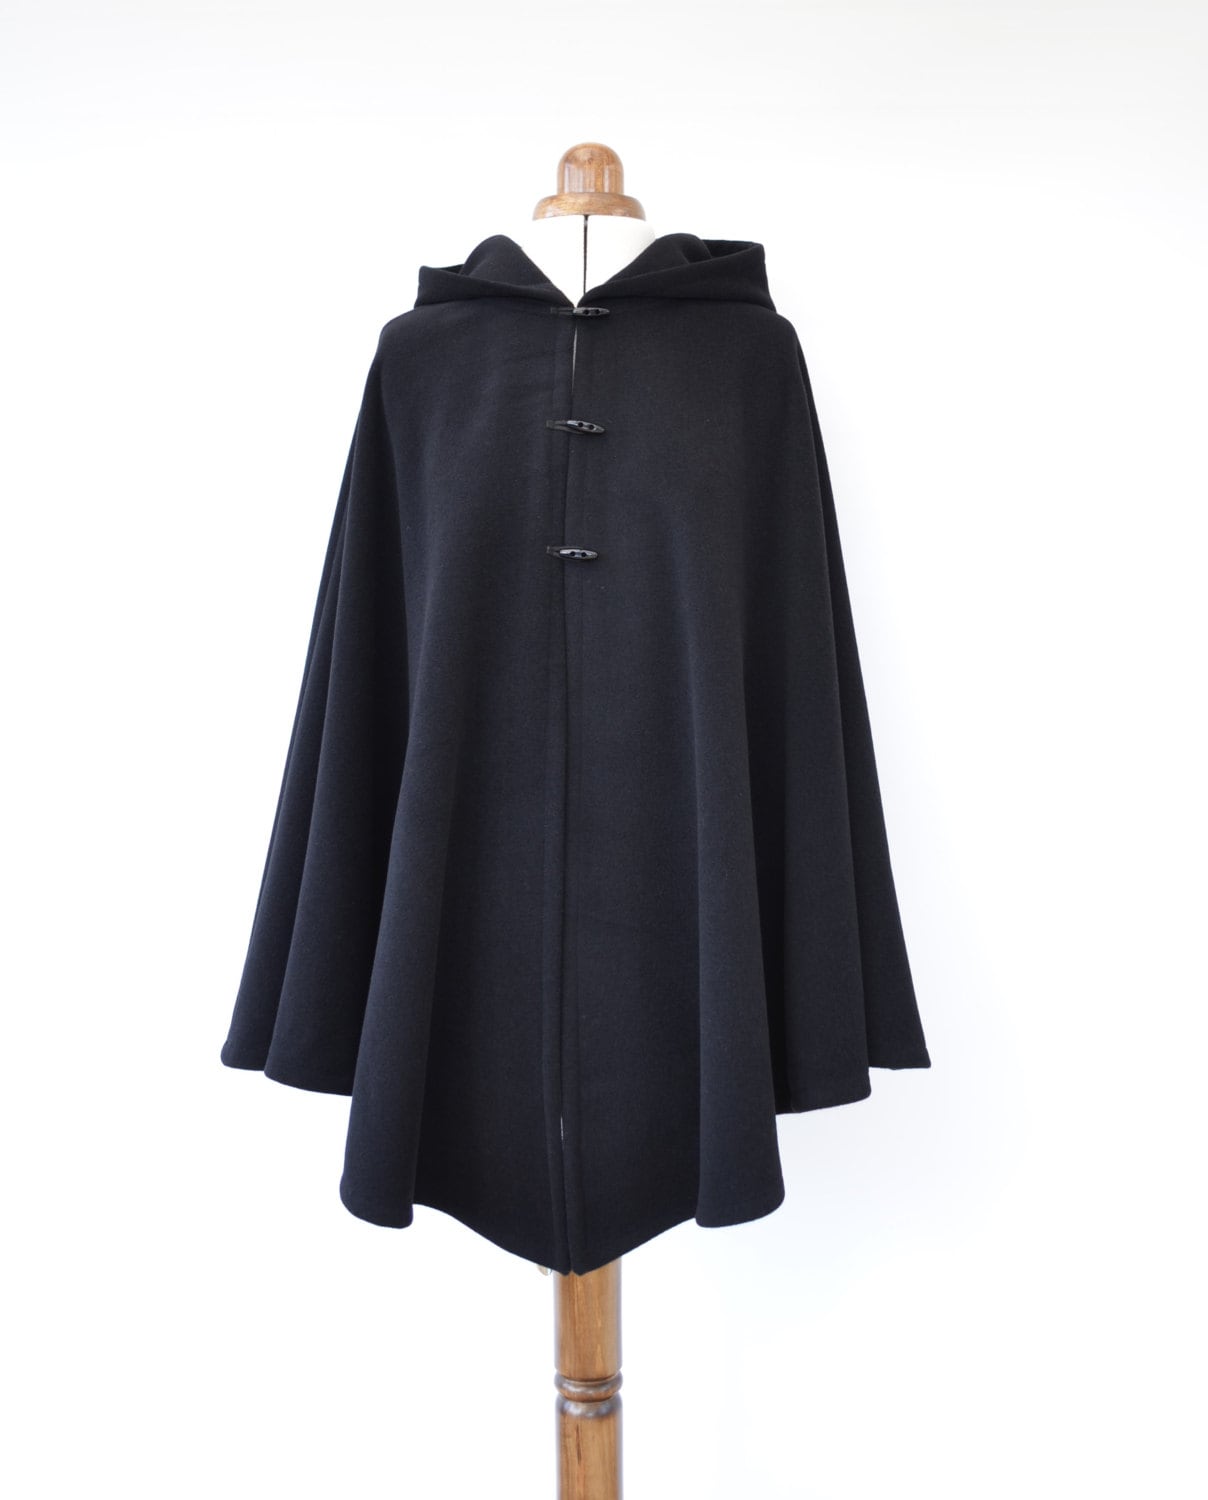 Black Wool Cashmere Cape Women's Hooded Poncho Jacket - Etsy UK